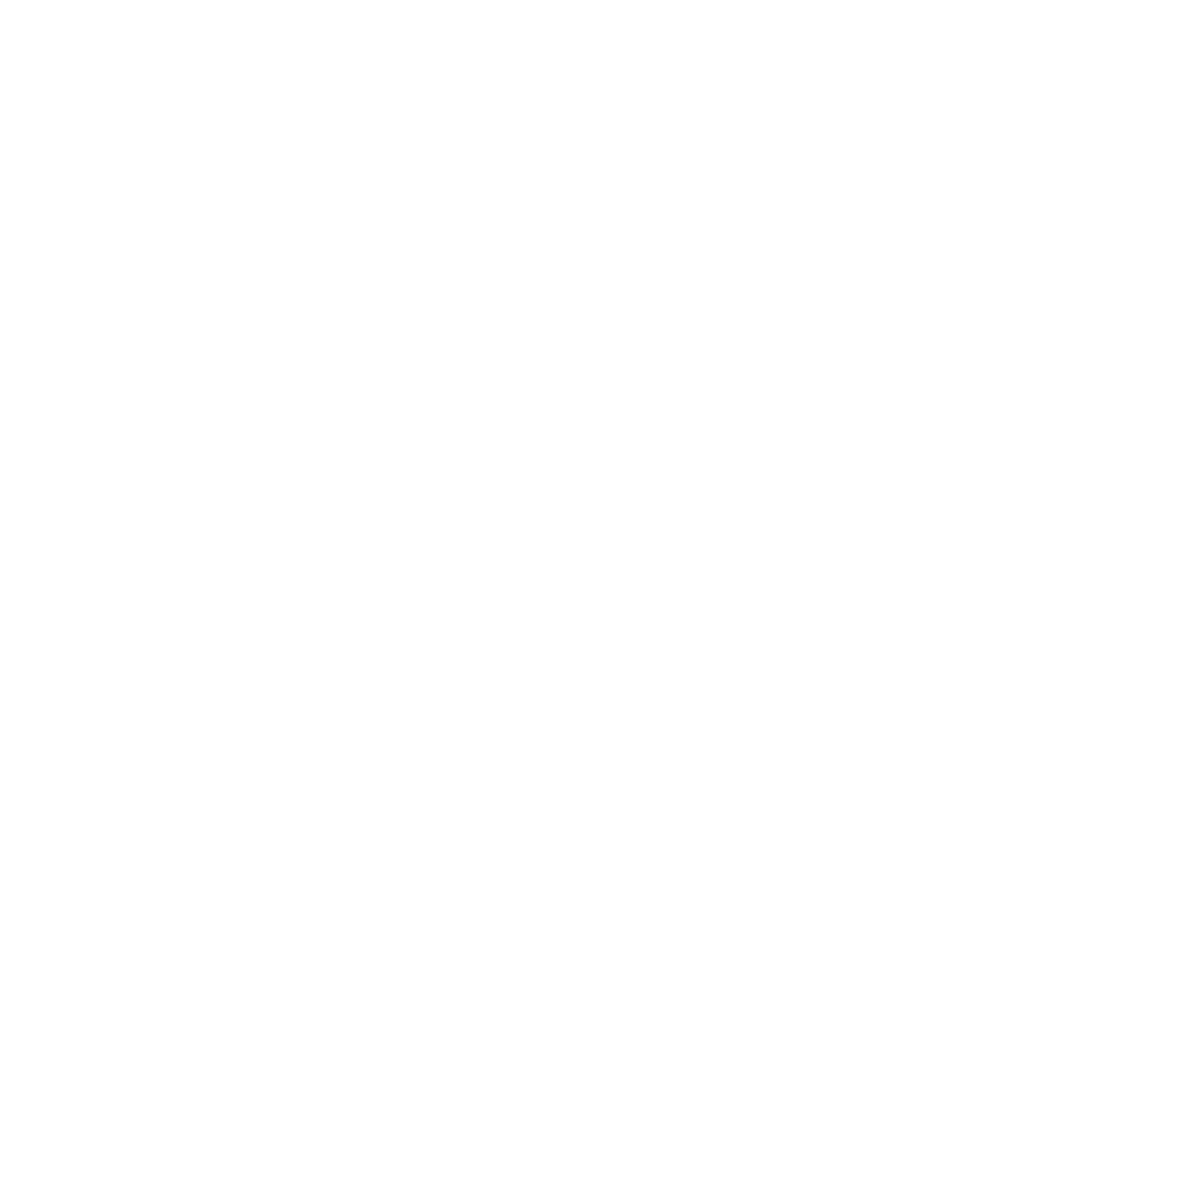 DPR+2010+white+logo+registered